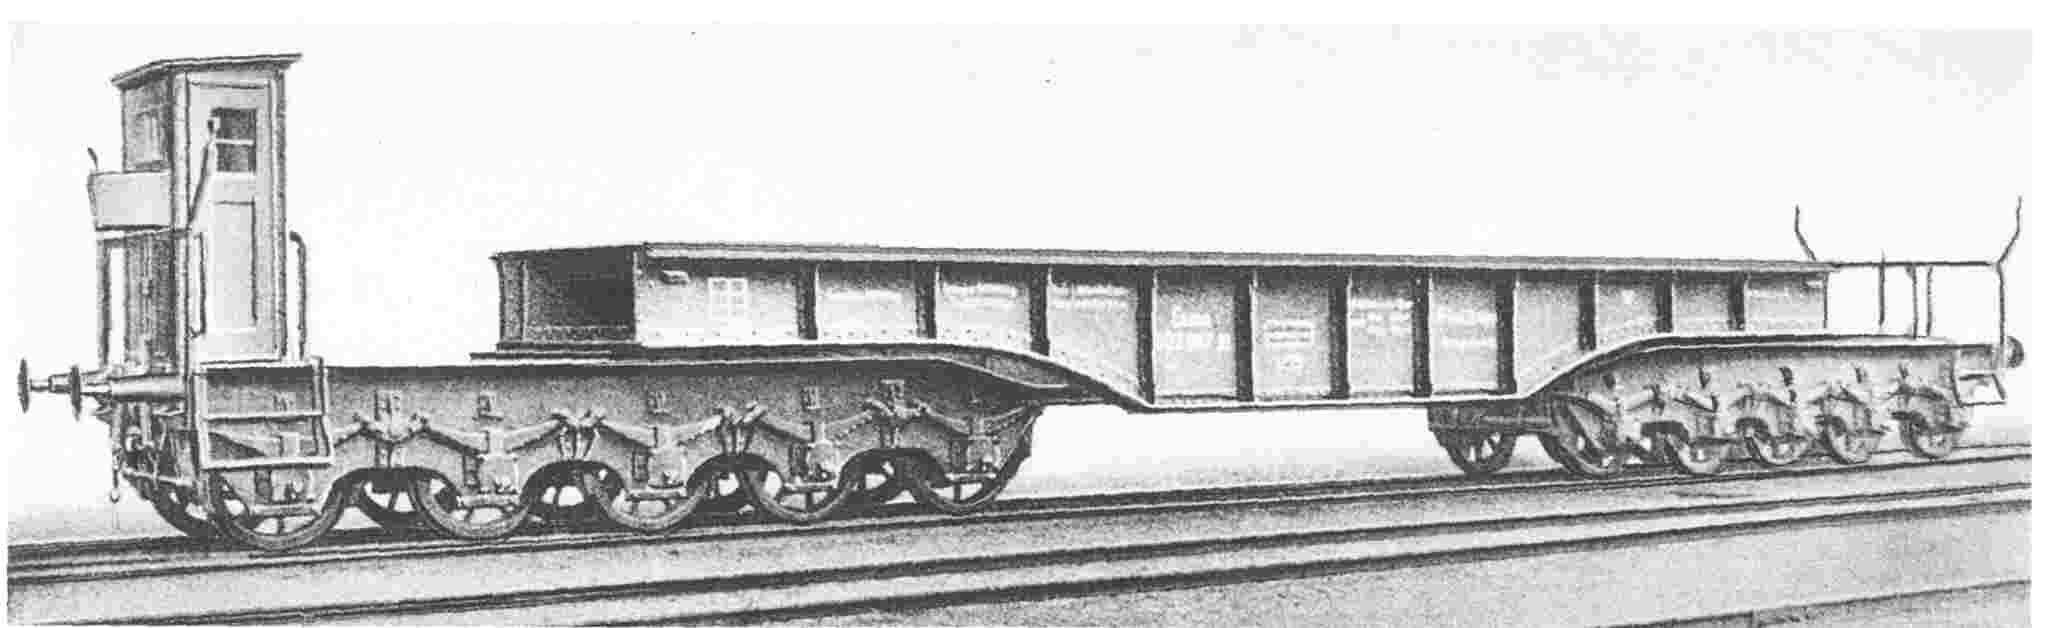 10-achsiger Tiefladewagen mit Blech und Winkel-Drehgestell, Essen 602 887 P, Werkfoto: Krupp